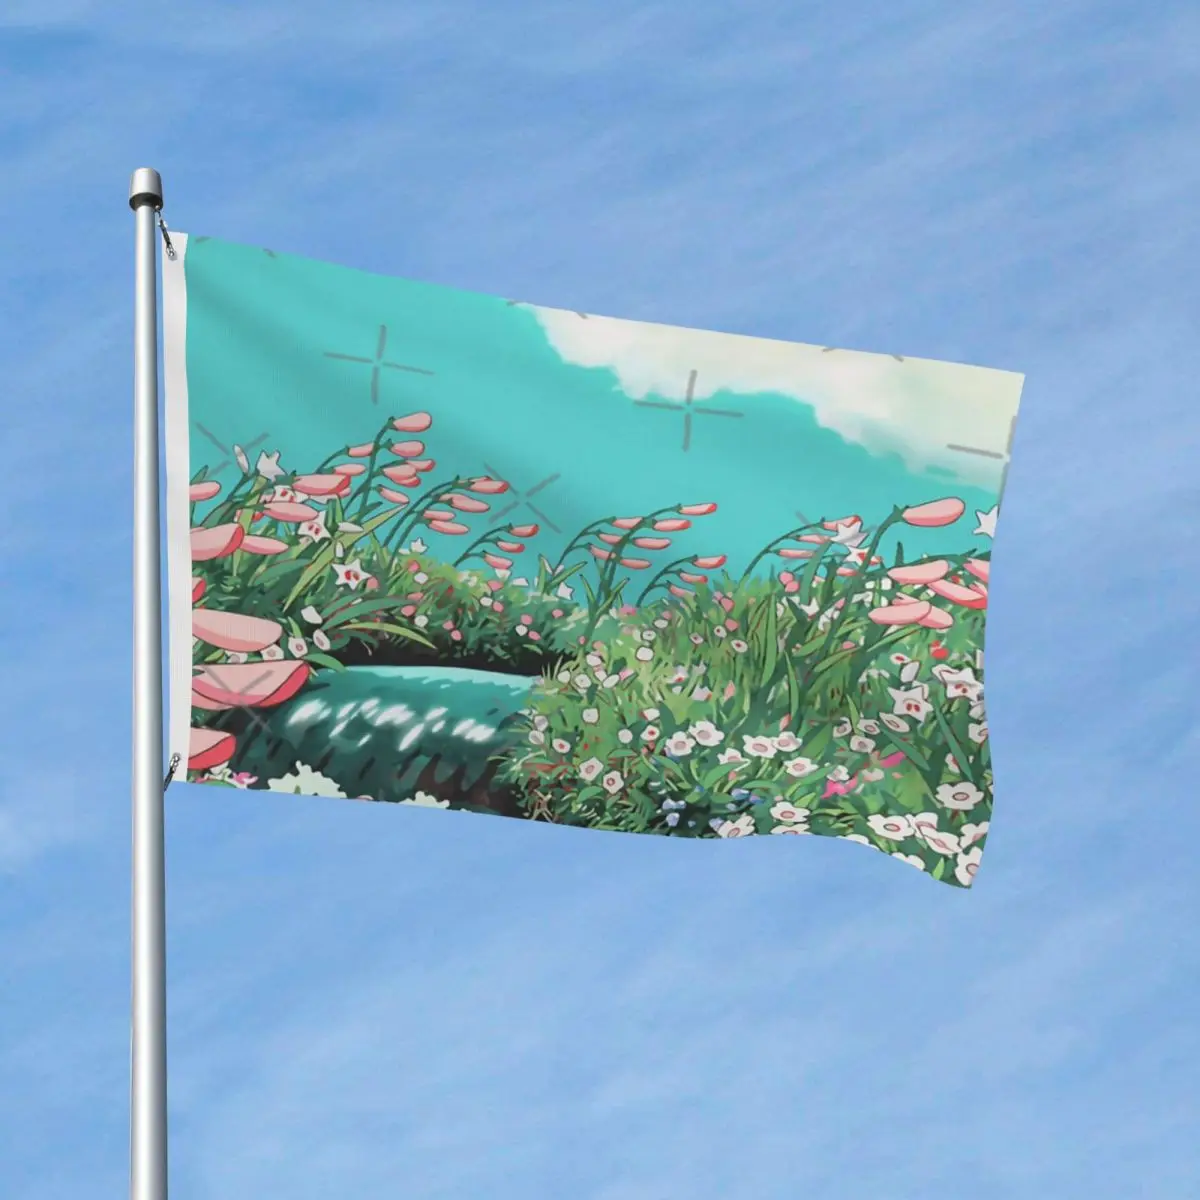 

Аниме цветы на реке флаг полиэстер легко повесить яркие цвета полиэстер драпировка без запаха настраиваемый